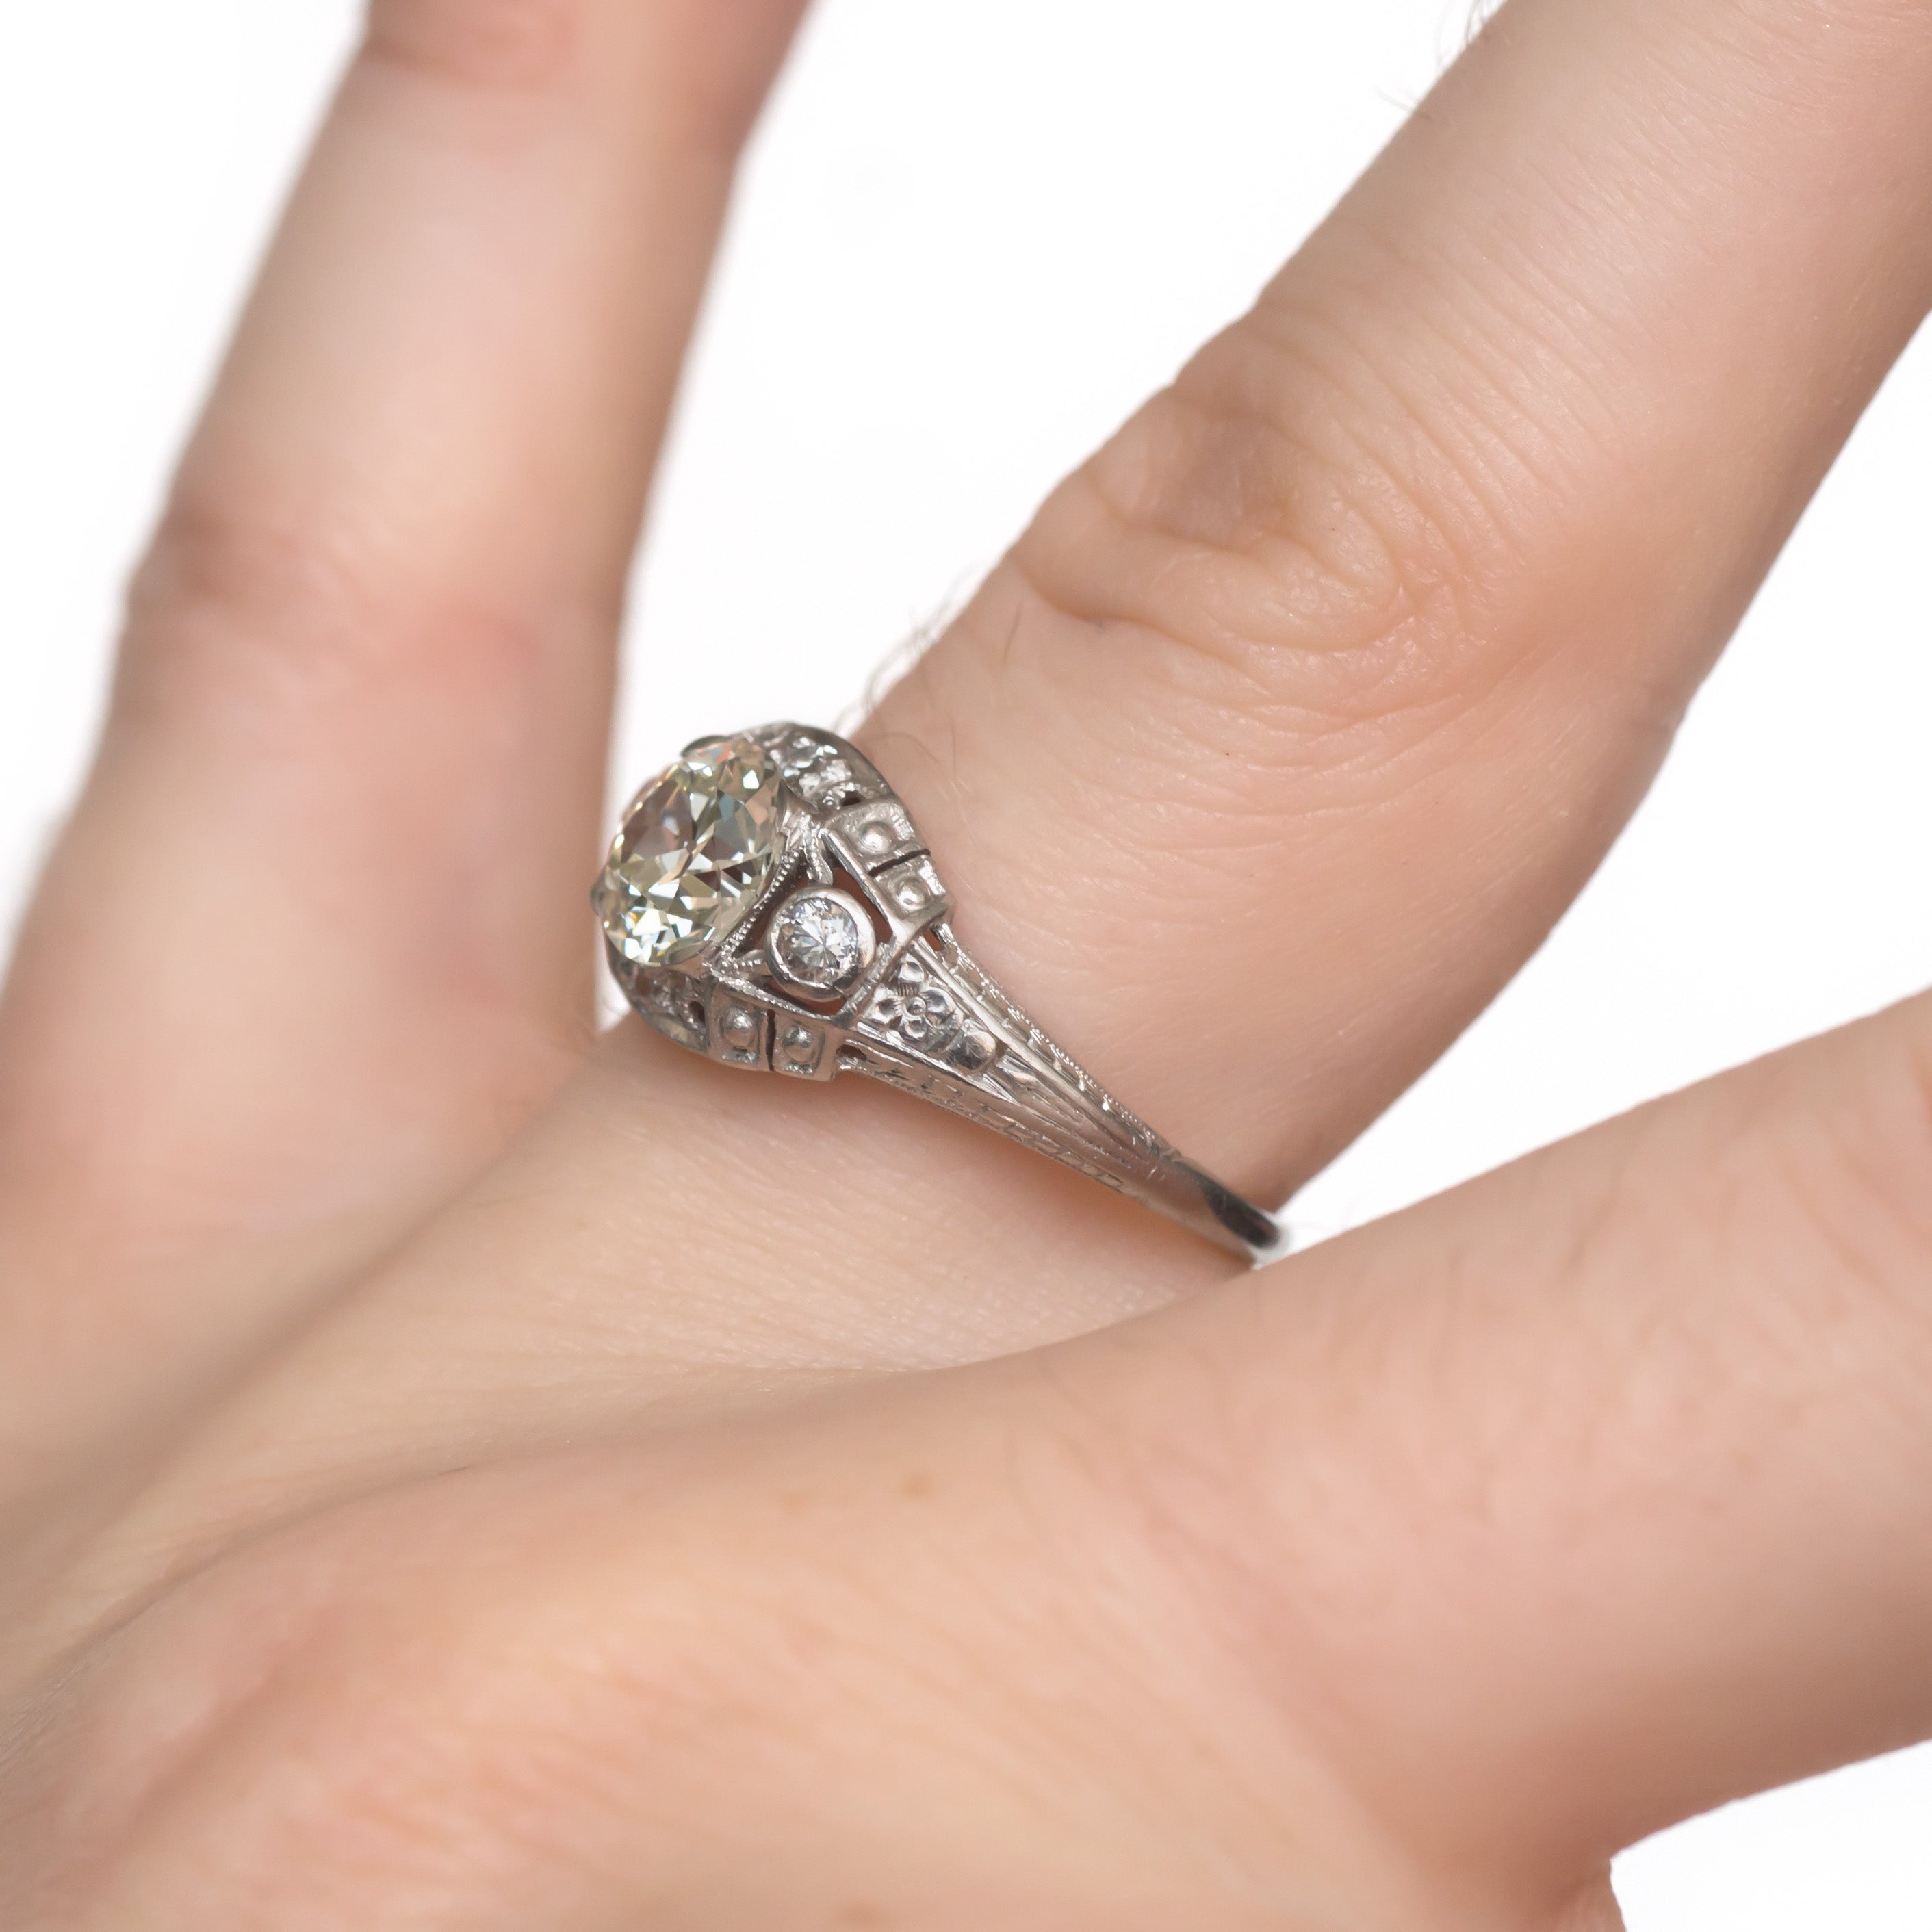 2 Carat Light Blue Sapphire Engagement Ring, Vintage Inspired White Gold  Diamond Filigree Ring With Milgrain Bezel - Etsy